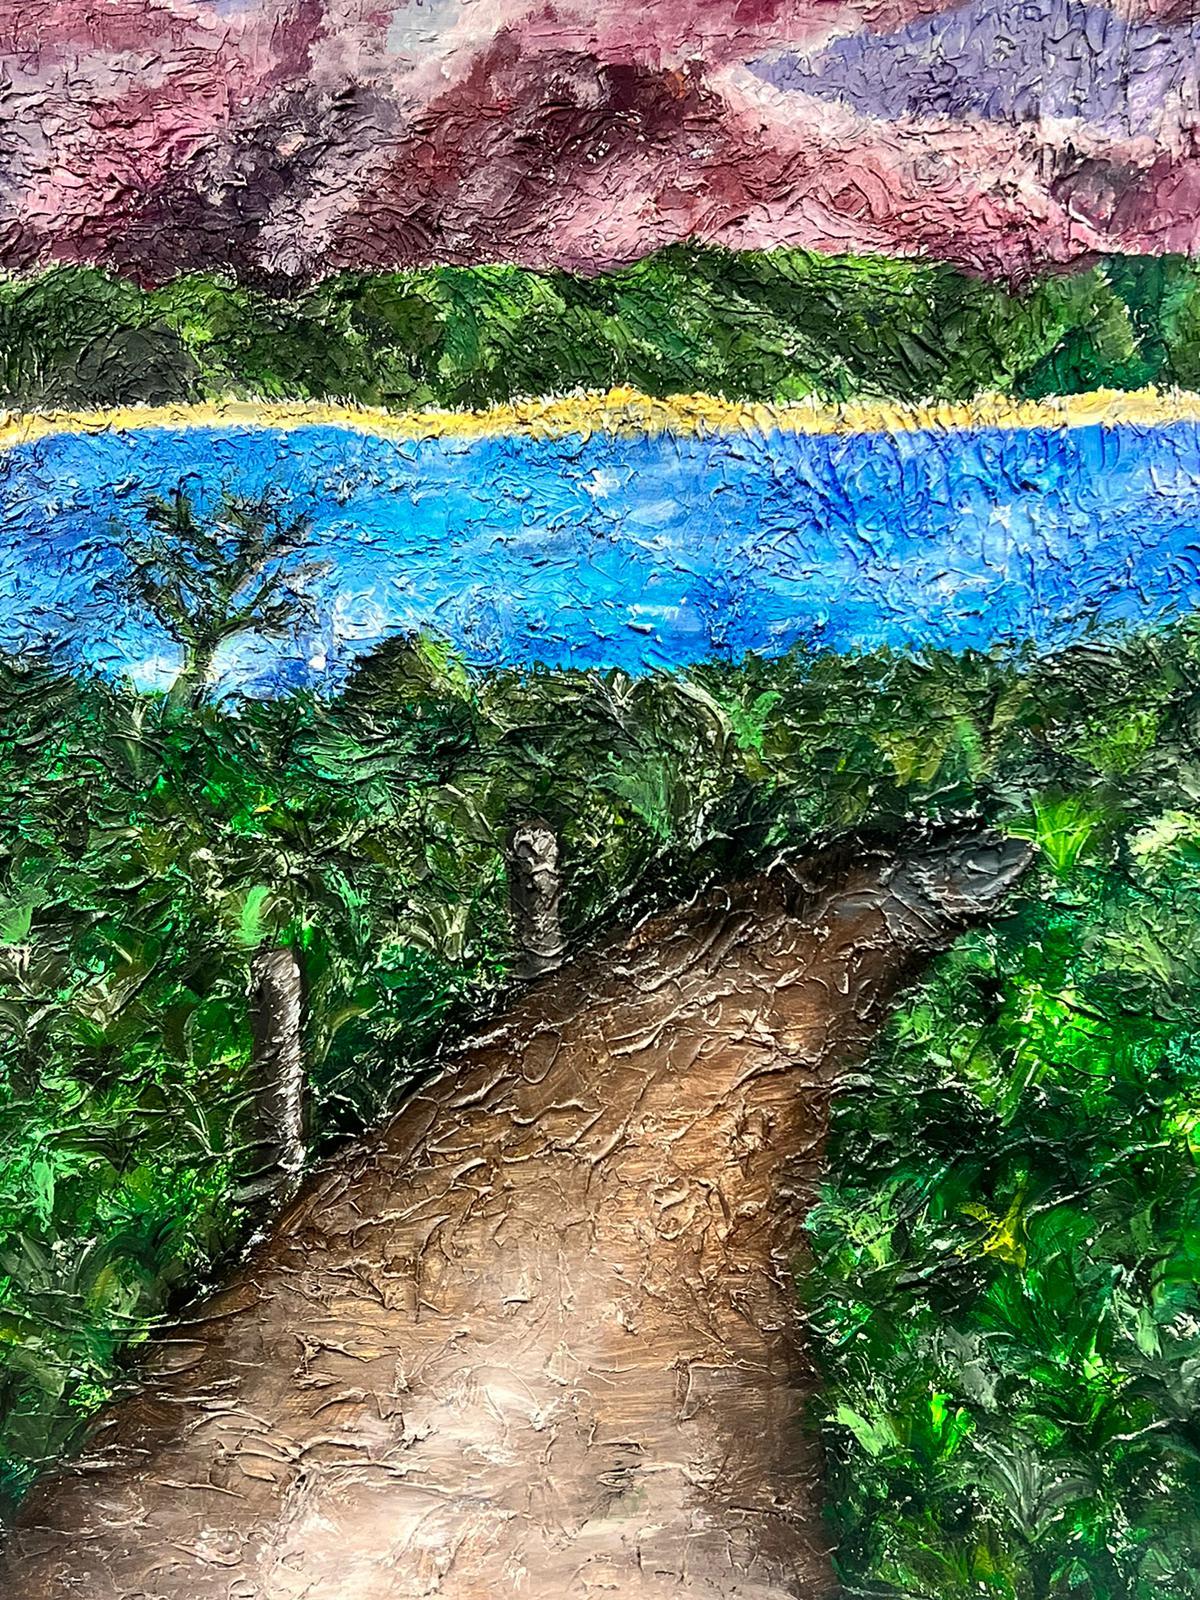 Padstow Küste
von Ellie Park (Britische Künstlerin des 21. Jahrhunderts)
dicke Acryl/Öl-Impasto-Malerei auf Leinwand 
verso signiert
Gemälde: 35 x 35 Zoll 
Zustand: guter und gesunder Zustand 